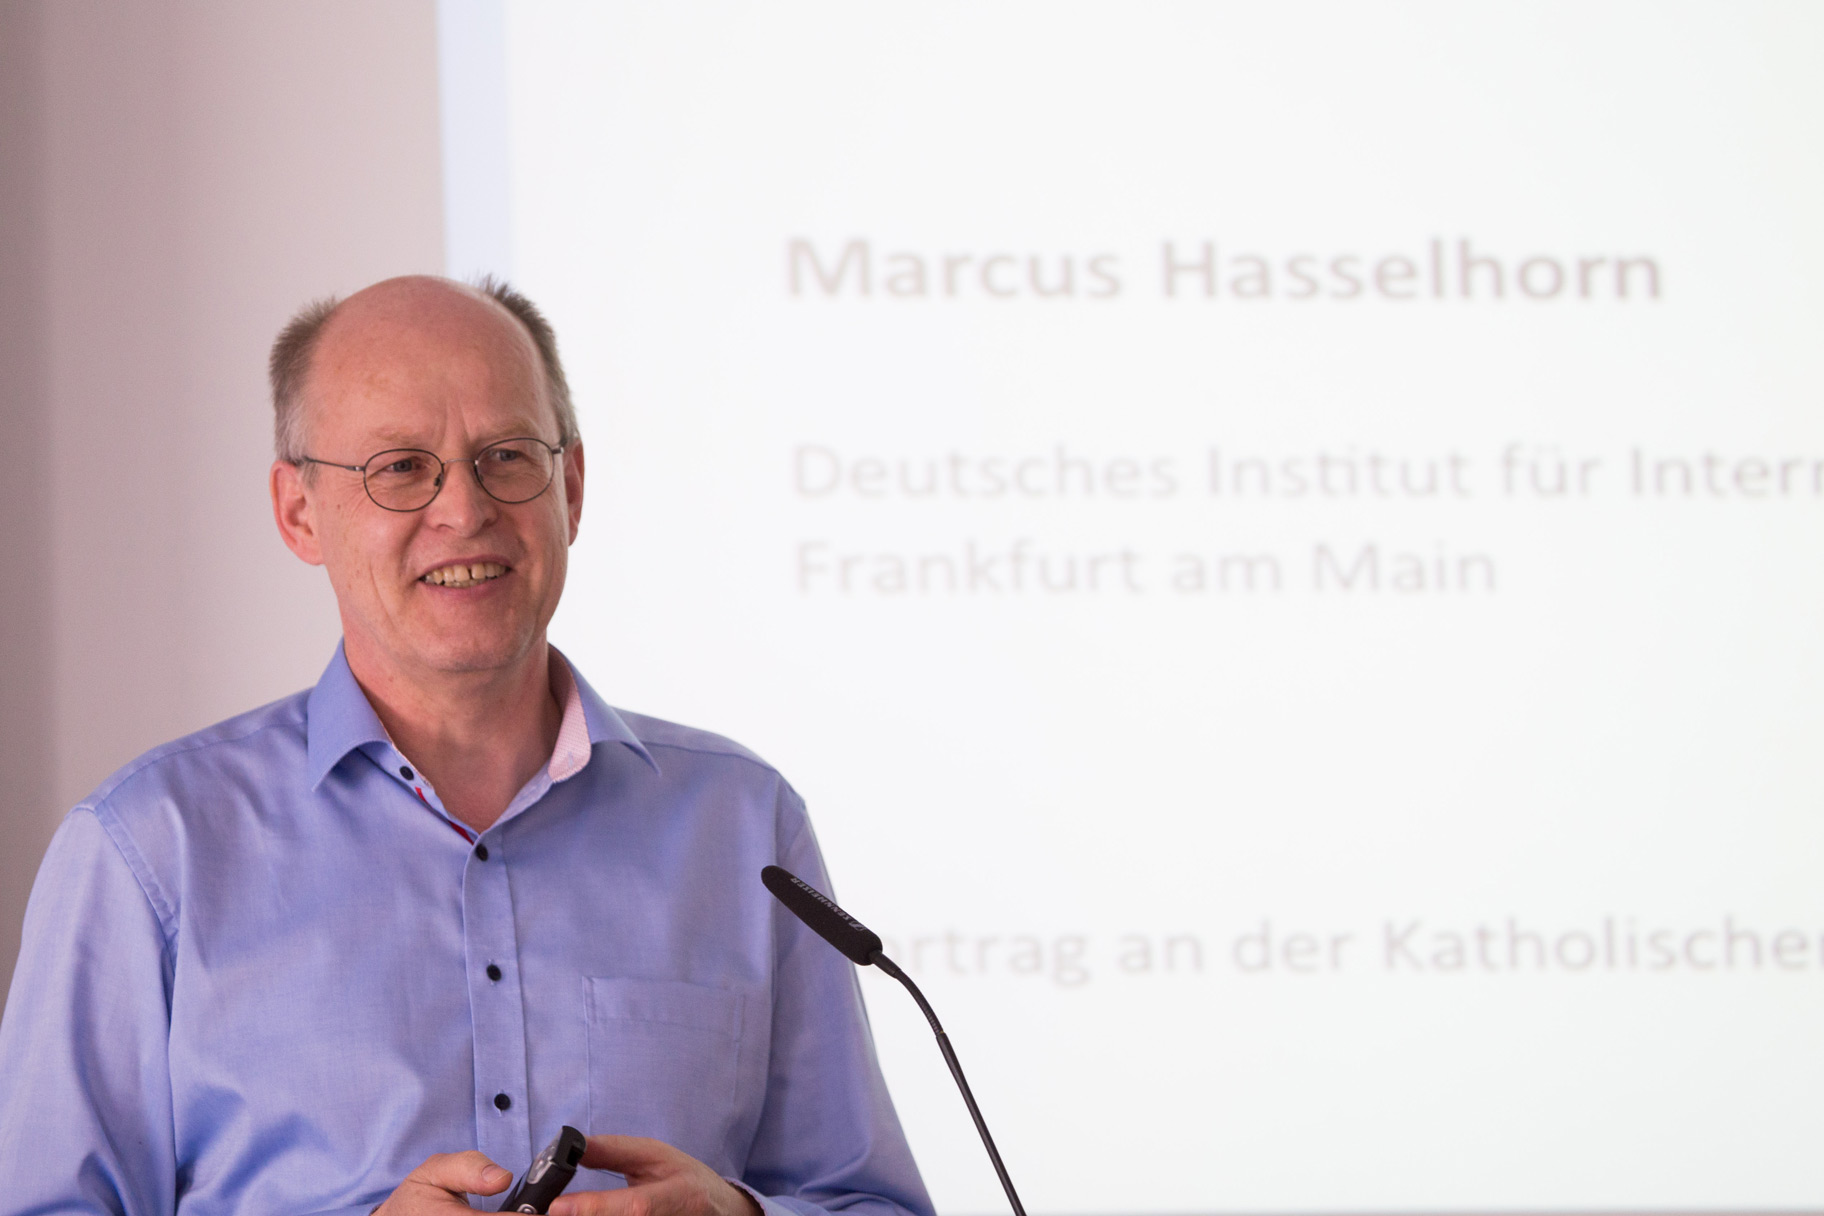 Bild vom Gastvortrag mit Prof. Dr. Marcus Hasselhorn